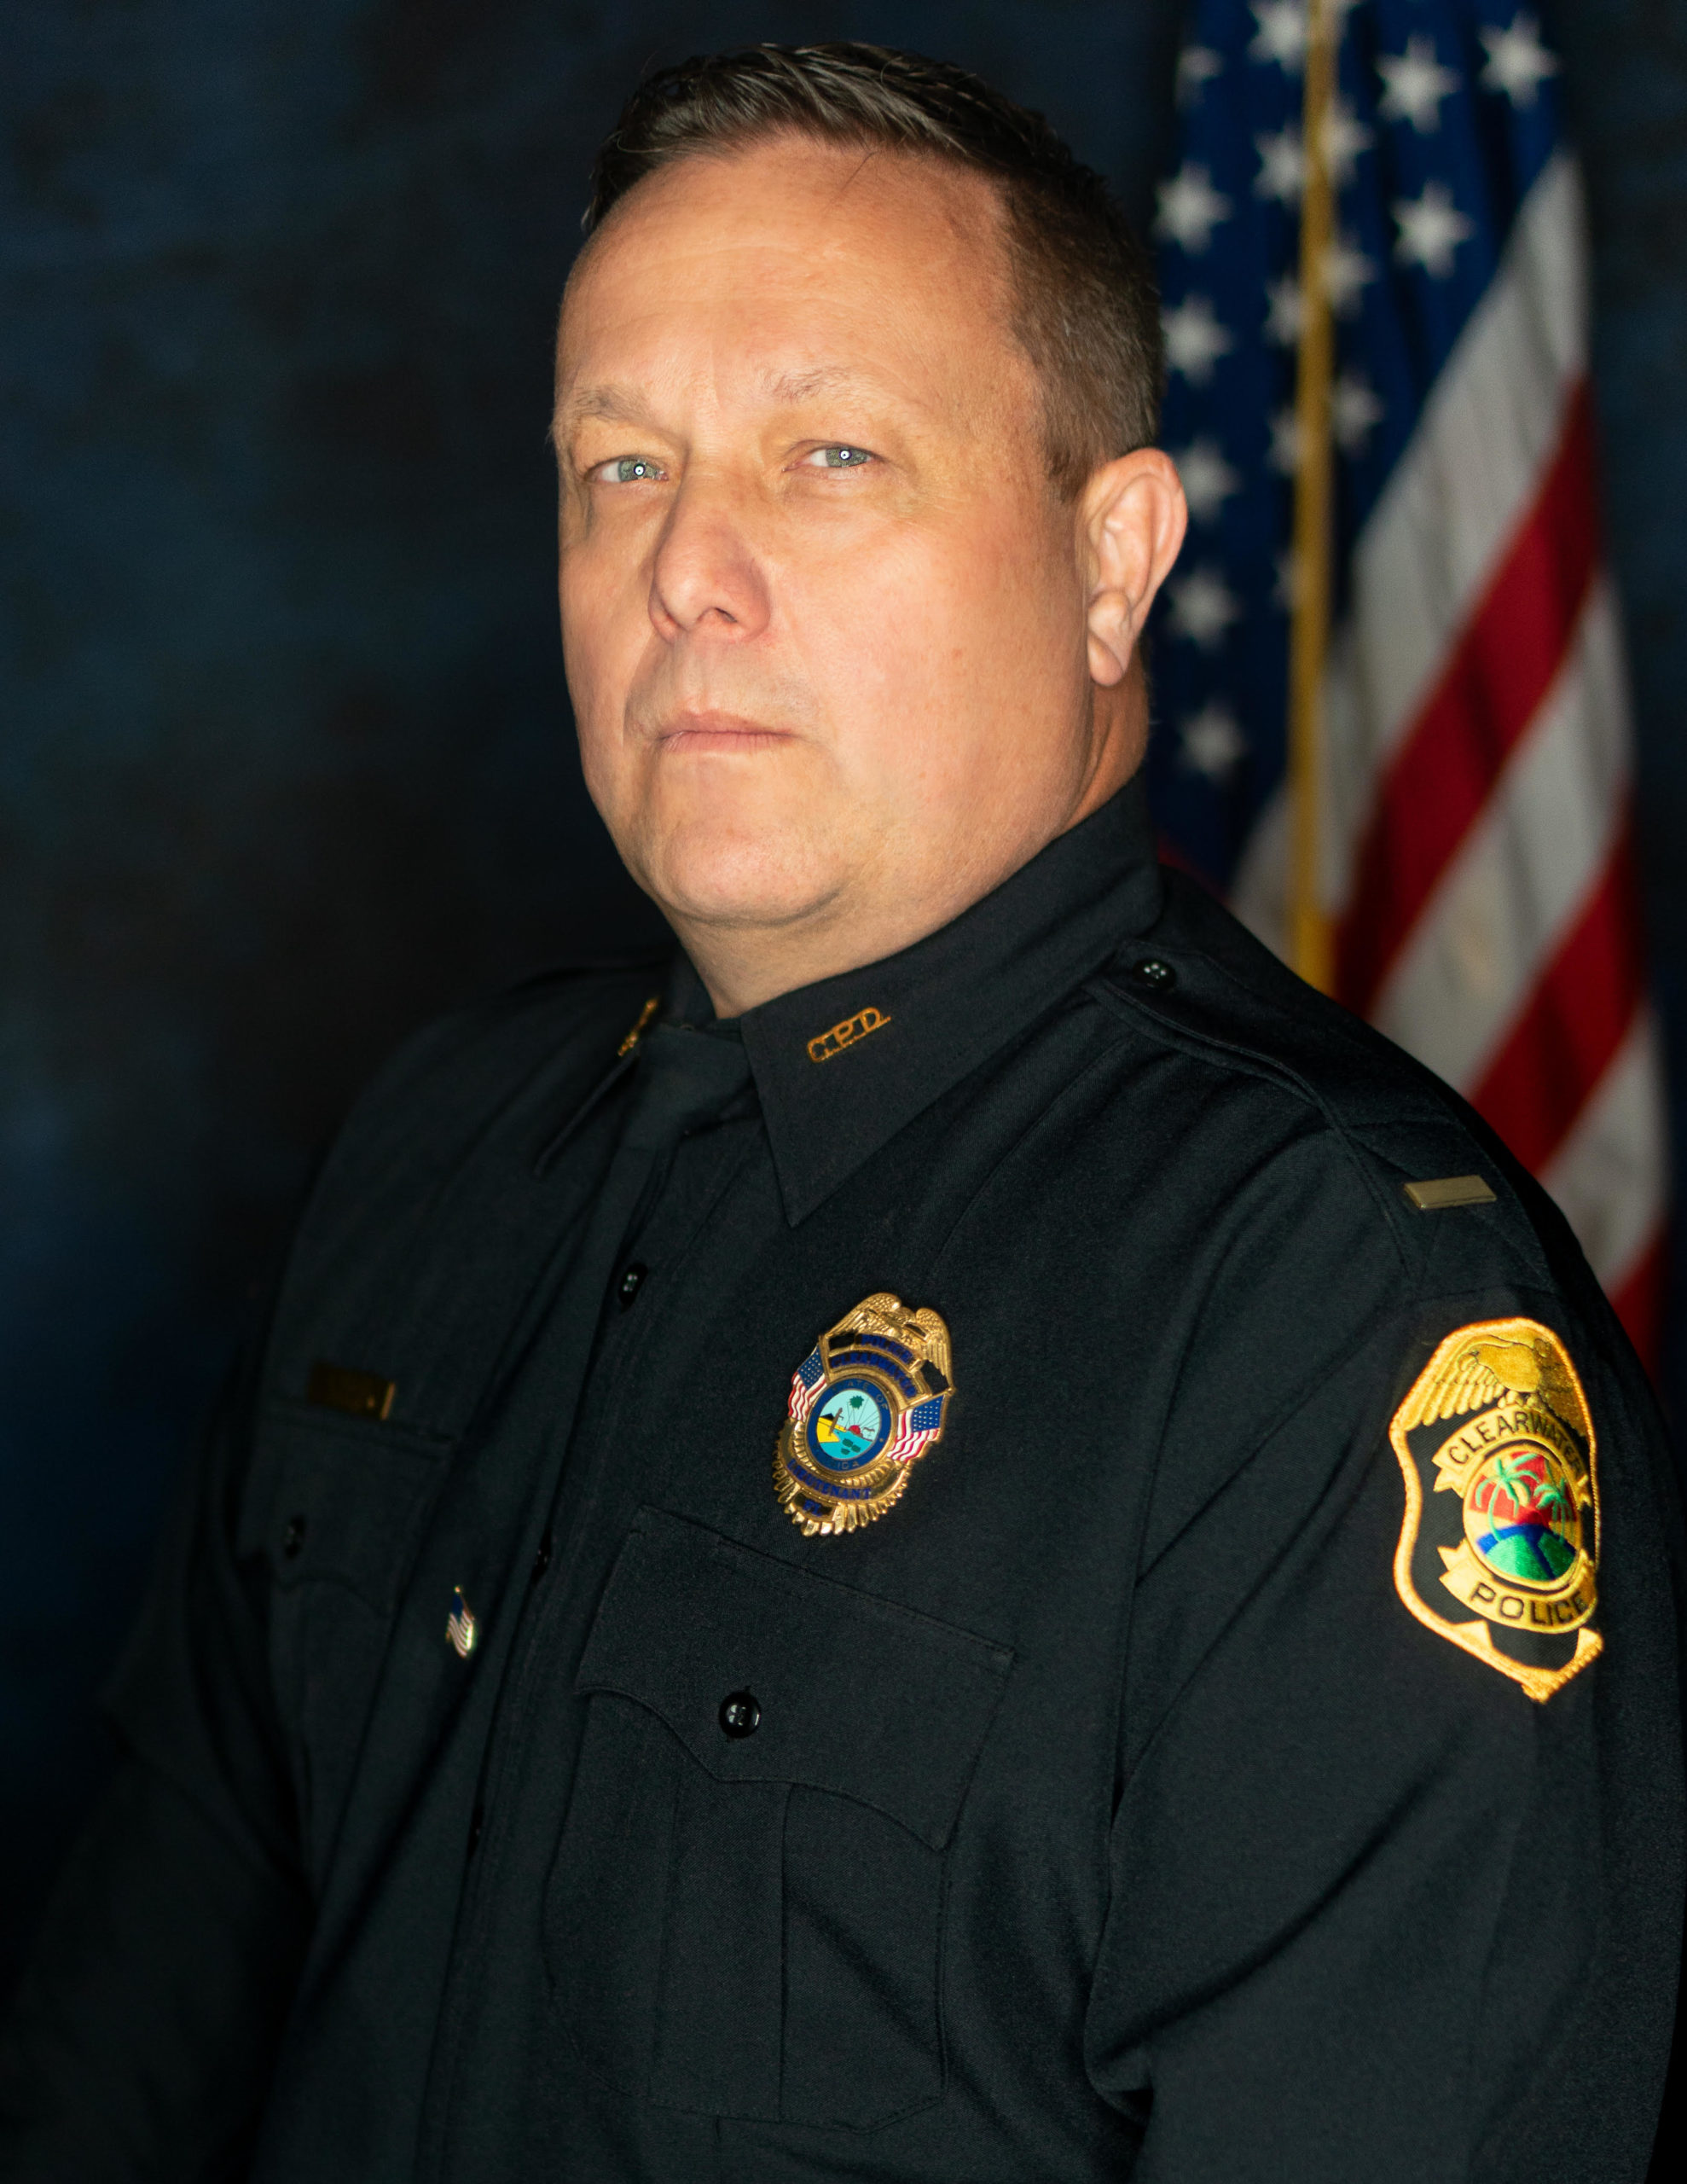 Clearwater Police Lt. Michael Walek